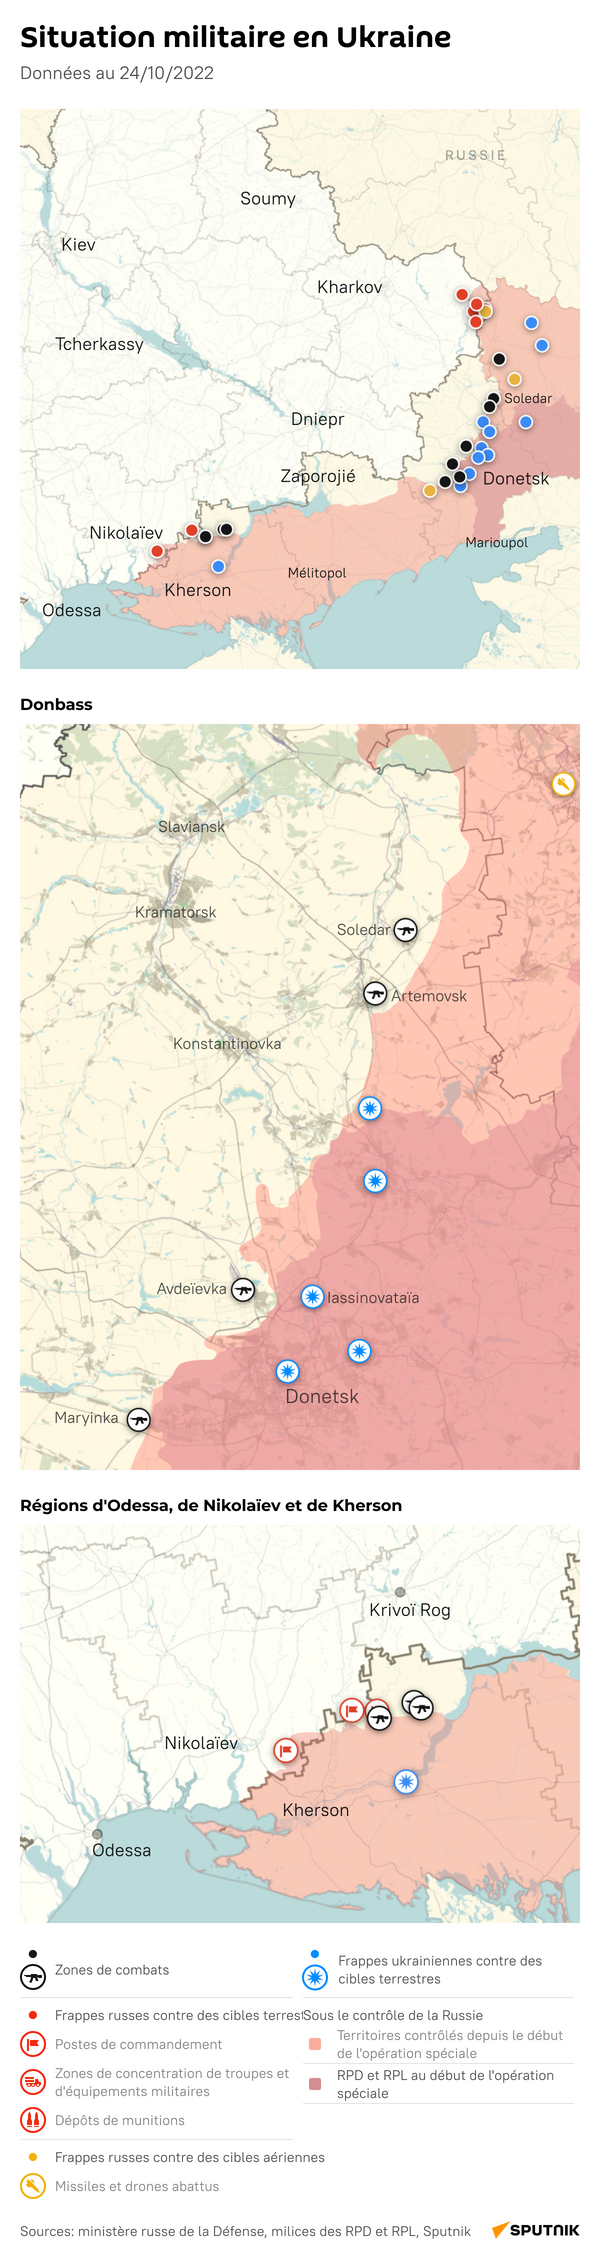 Situation militaire en Ukraine, 24 octobre 2022 - Sputnik Afrique